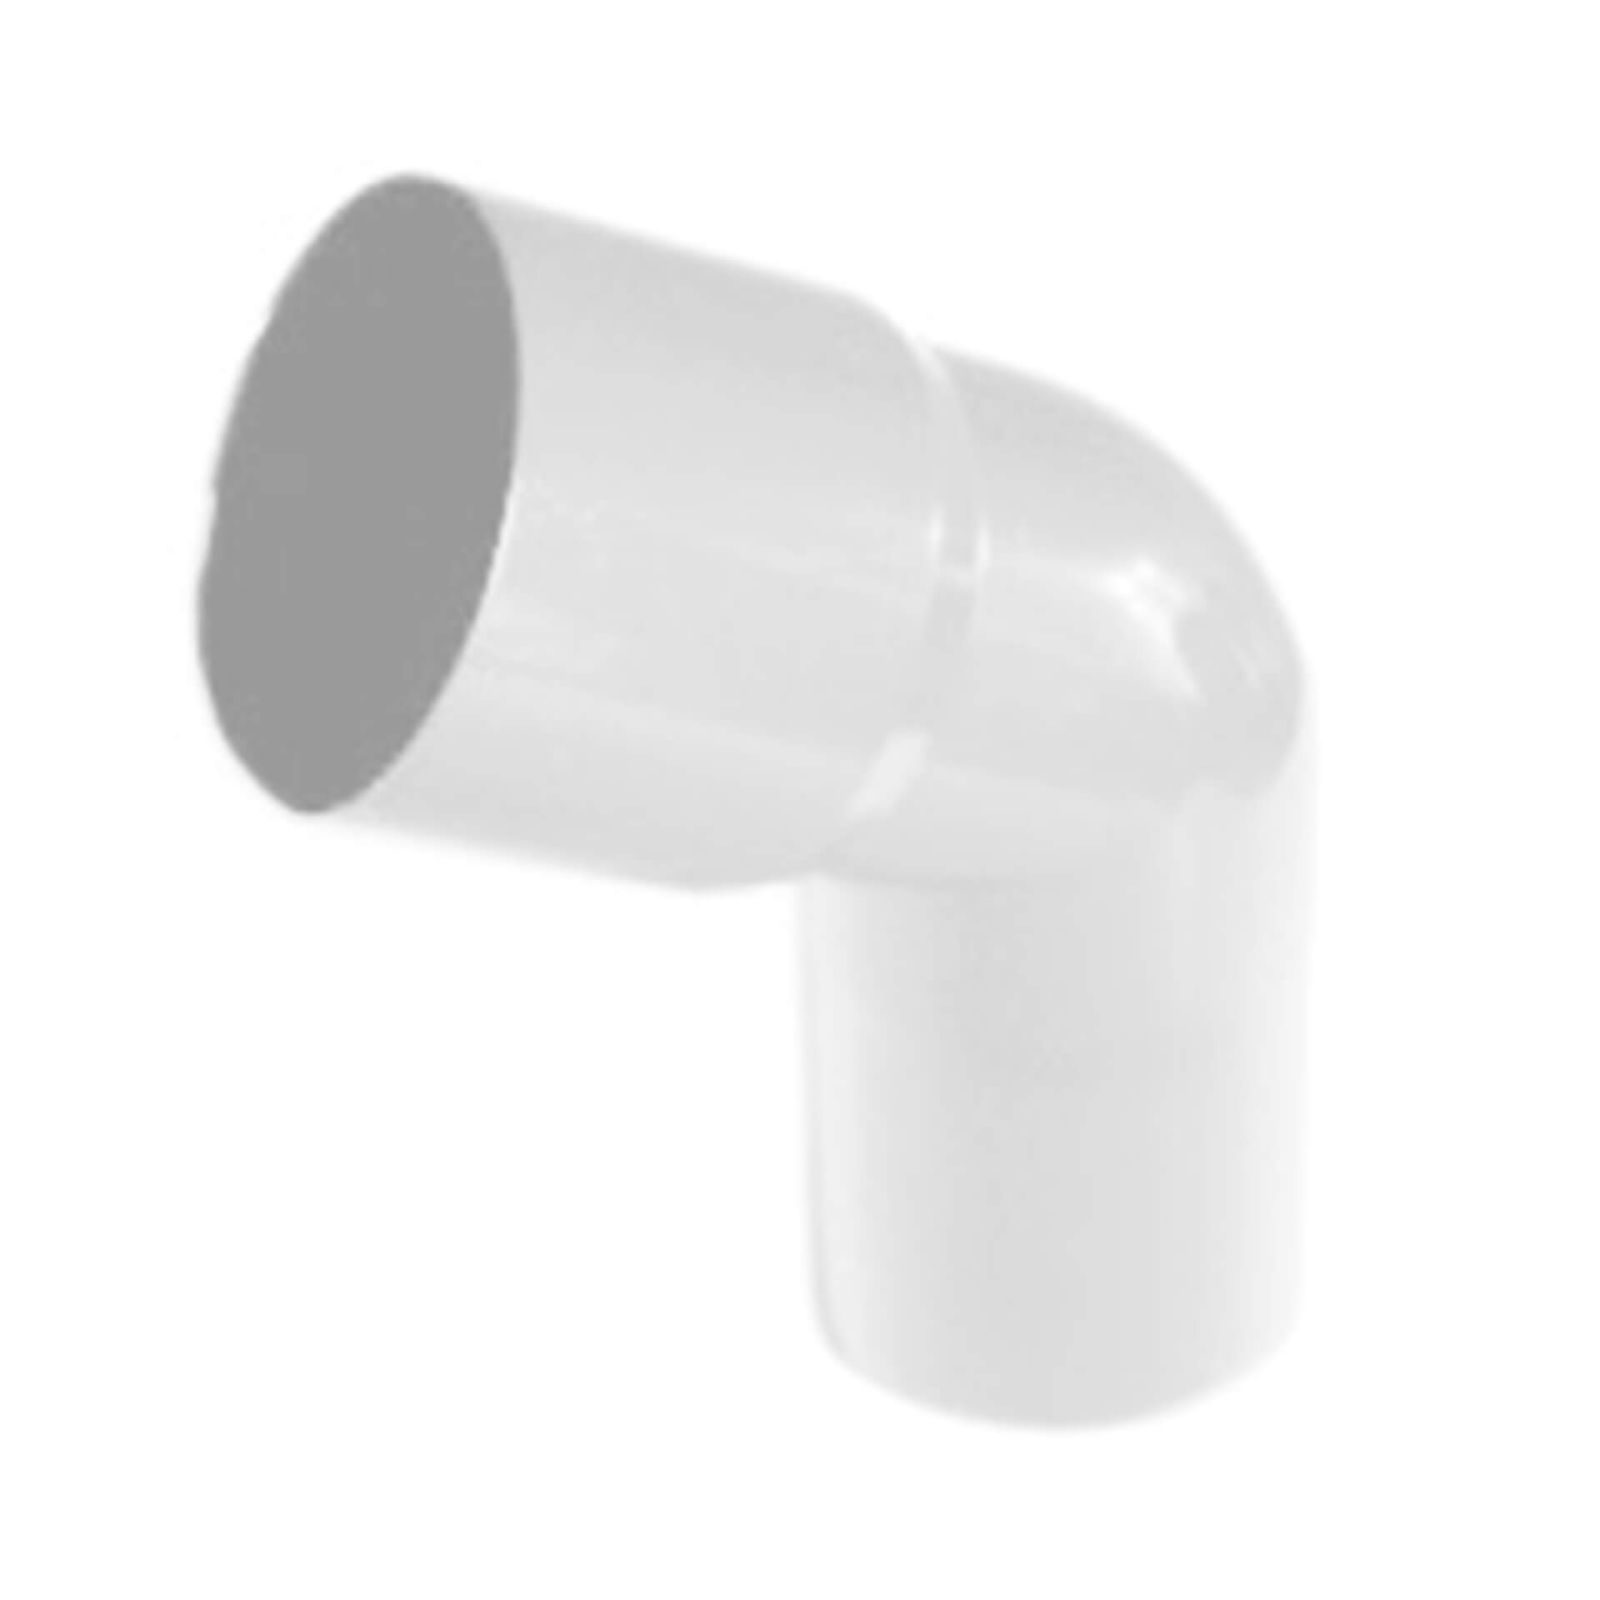 Kunststoff Dachrinnen Sparpaket 4 m | Ø 100/75 mm | Farbe Weiß #6